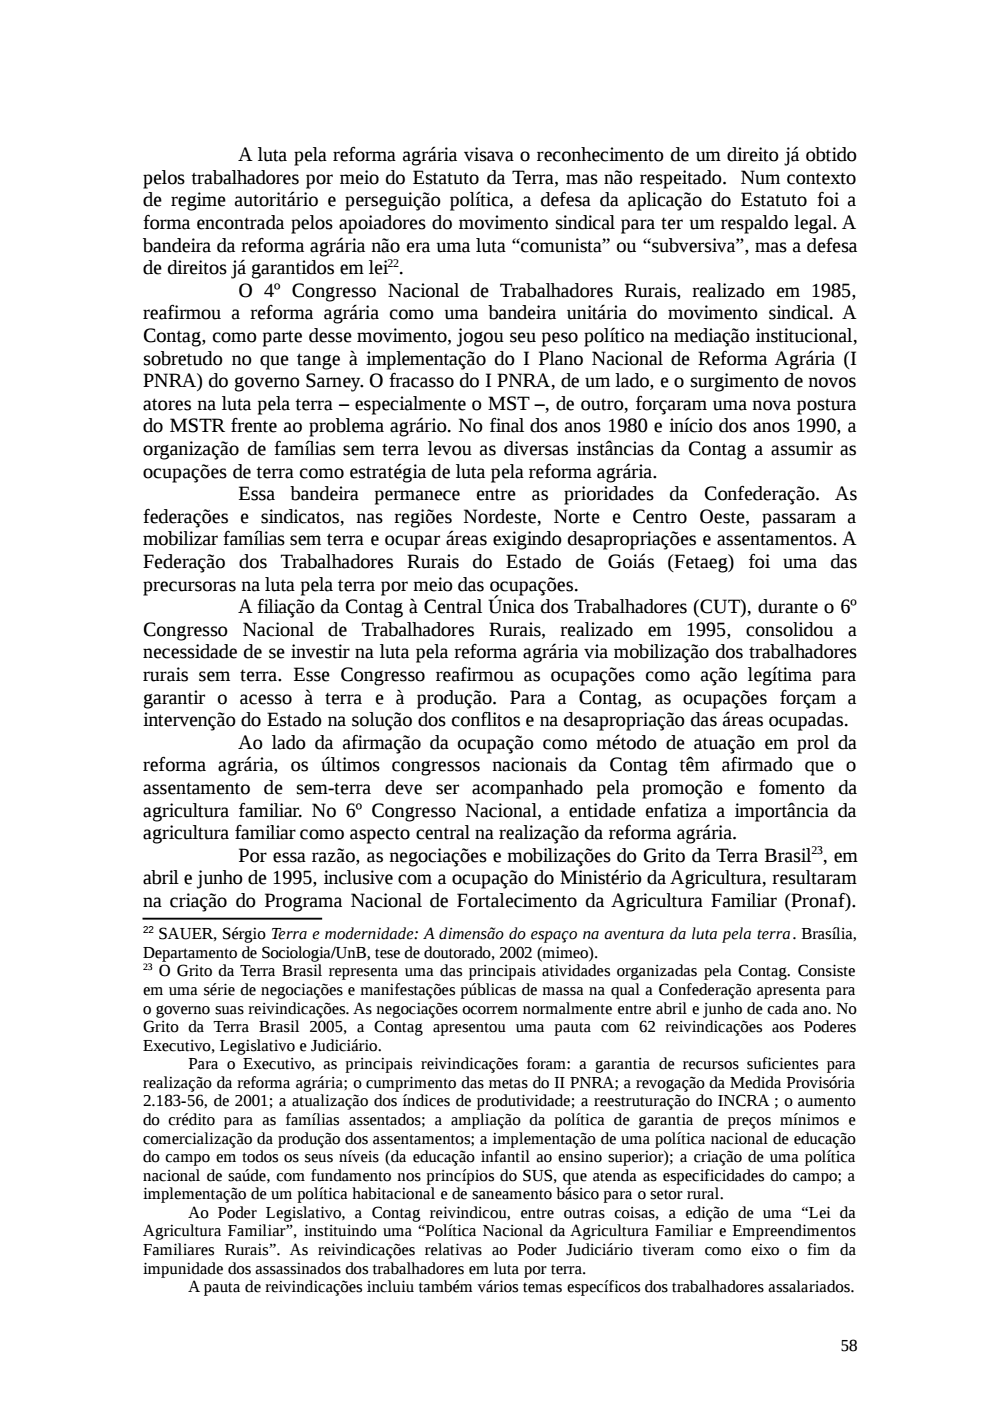 Page 58 from Relatório final da comissão